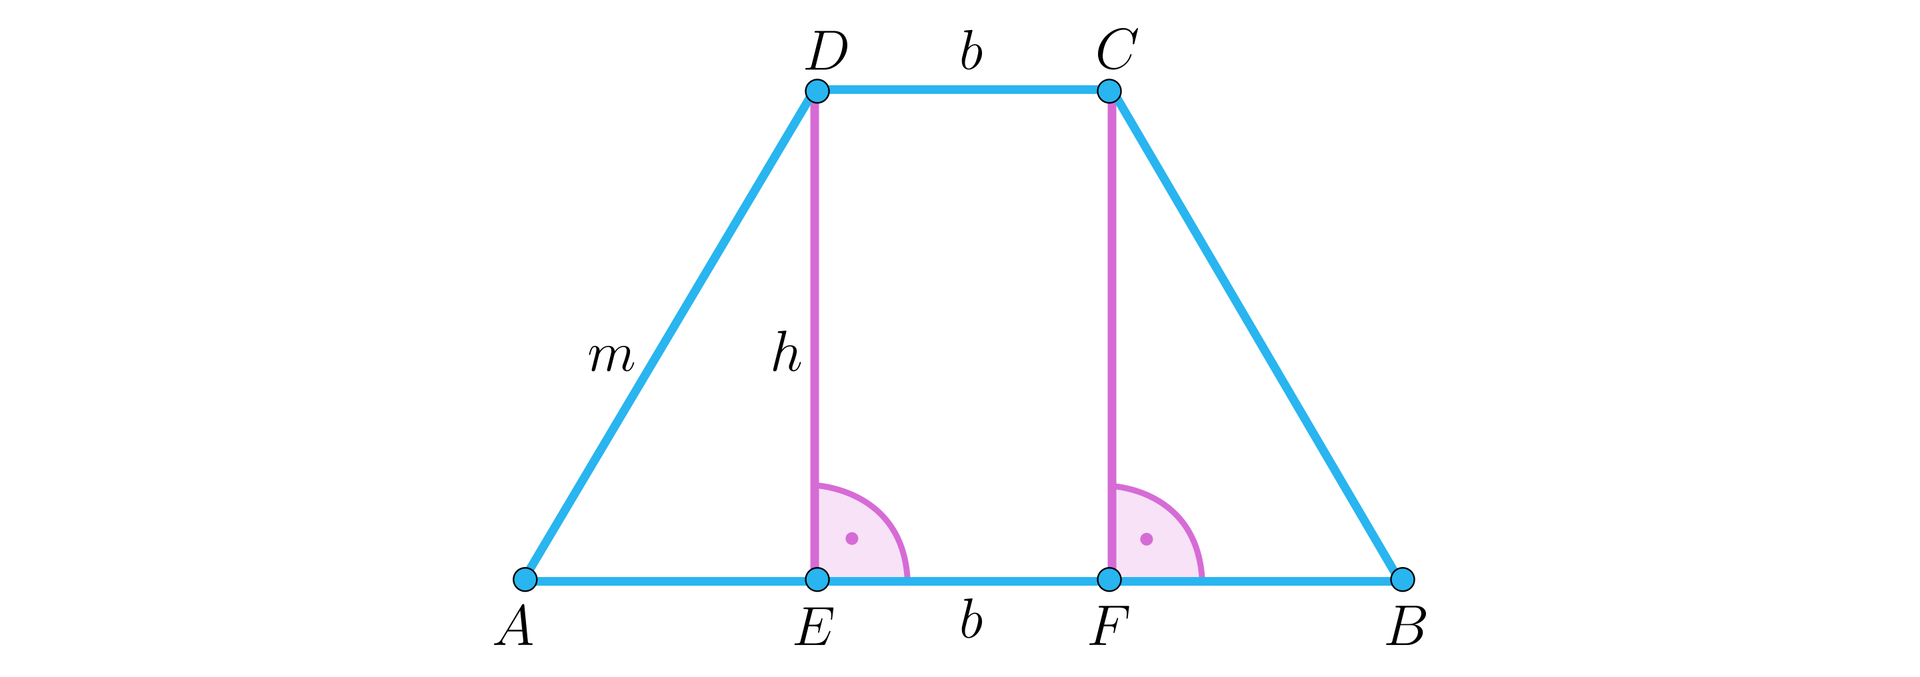 Ilustracja przedstawia podstawę ostrosłupa będącą trapezem równoramiennym. Górna podstawa CD długość b, prawy oraz lewy ukośny bok długość m. Z lewego oraz prawego górnego wierzchołka upuszczono na podstawę wysokości h i oznaczono kąty proste między tymi wysokościami a podstawą. Zaznaczono również punkty na krawędzi podstawy, w miejsce których zostały upuszczone wysokości. Odpowiednio punkt E dla wysokości wychodzącej z punktu D oraz punkt F dla tej z punktu C. Odcinek EF ma długość b.